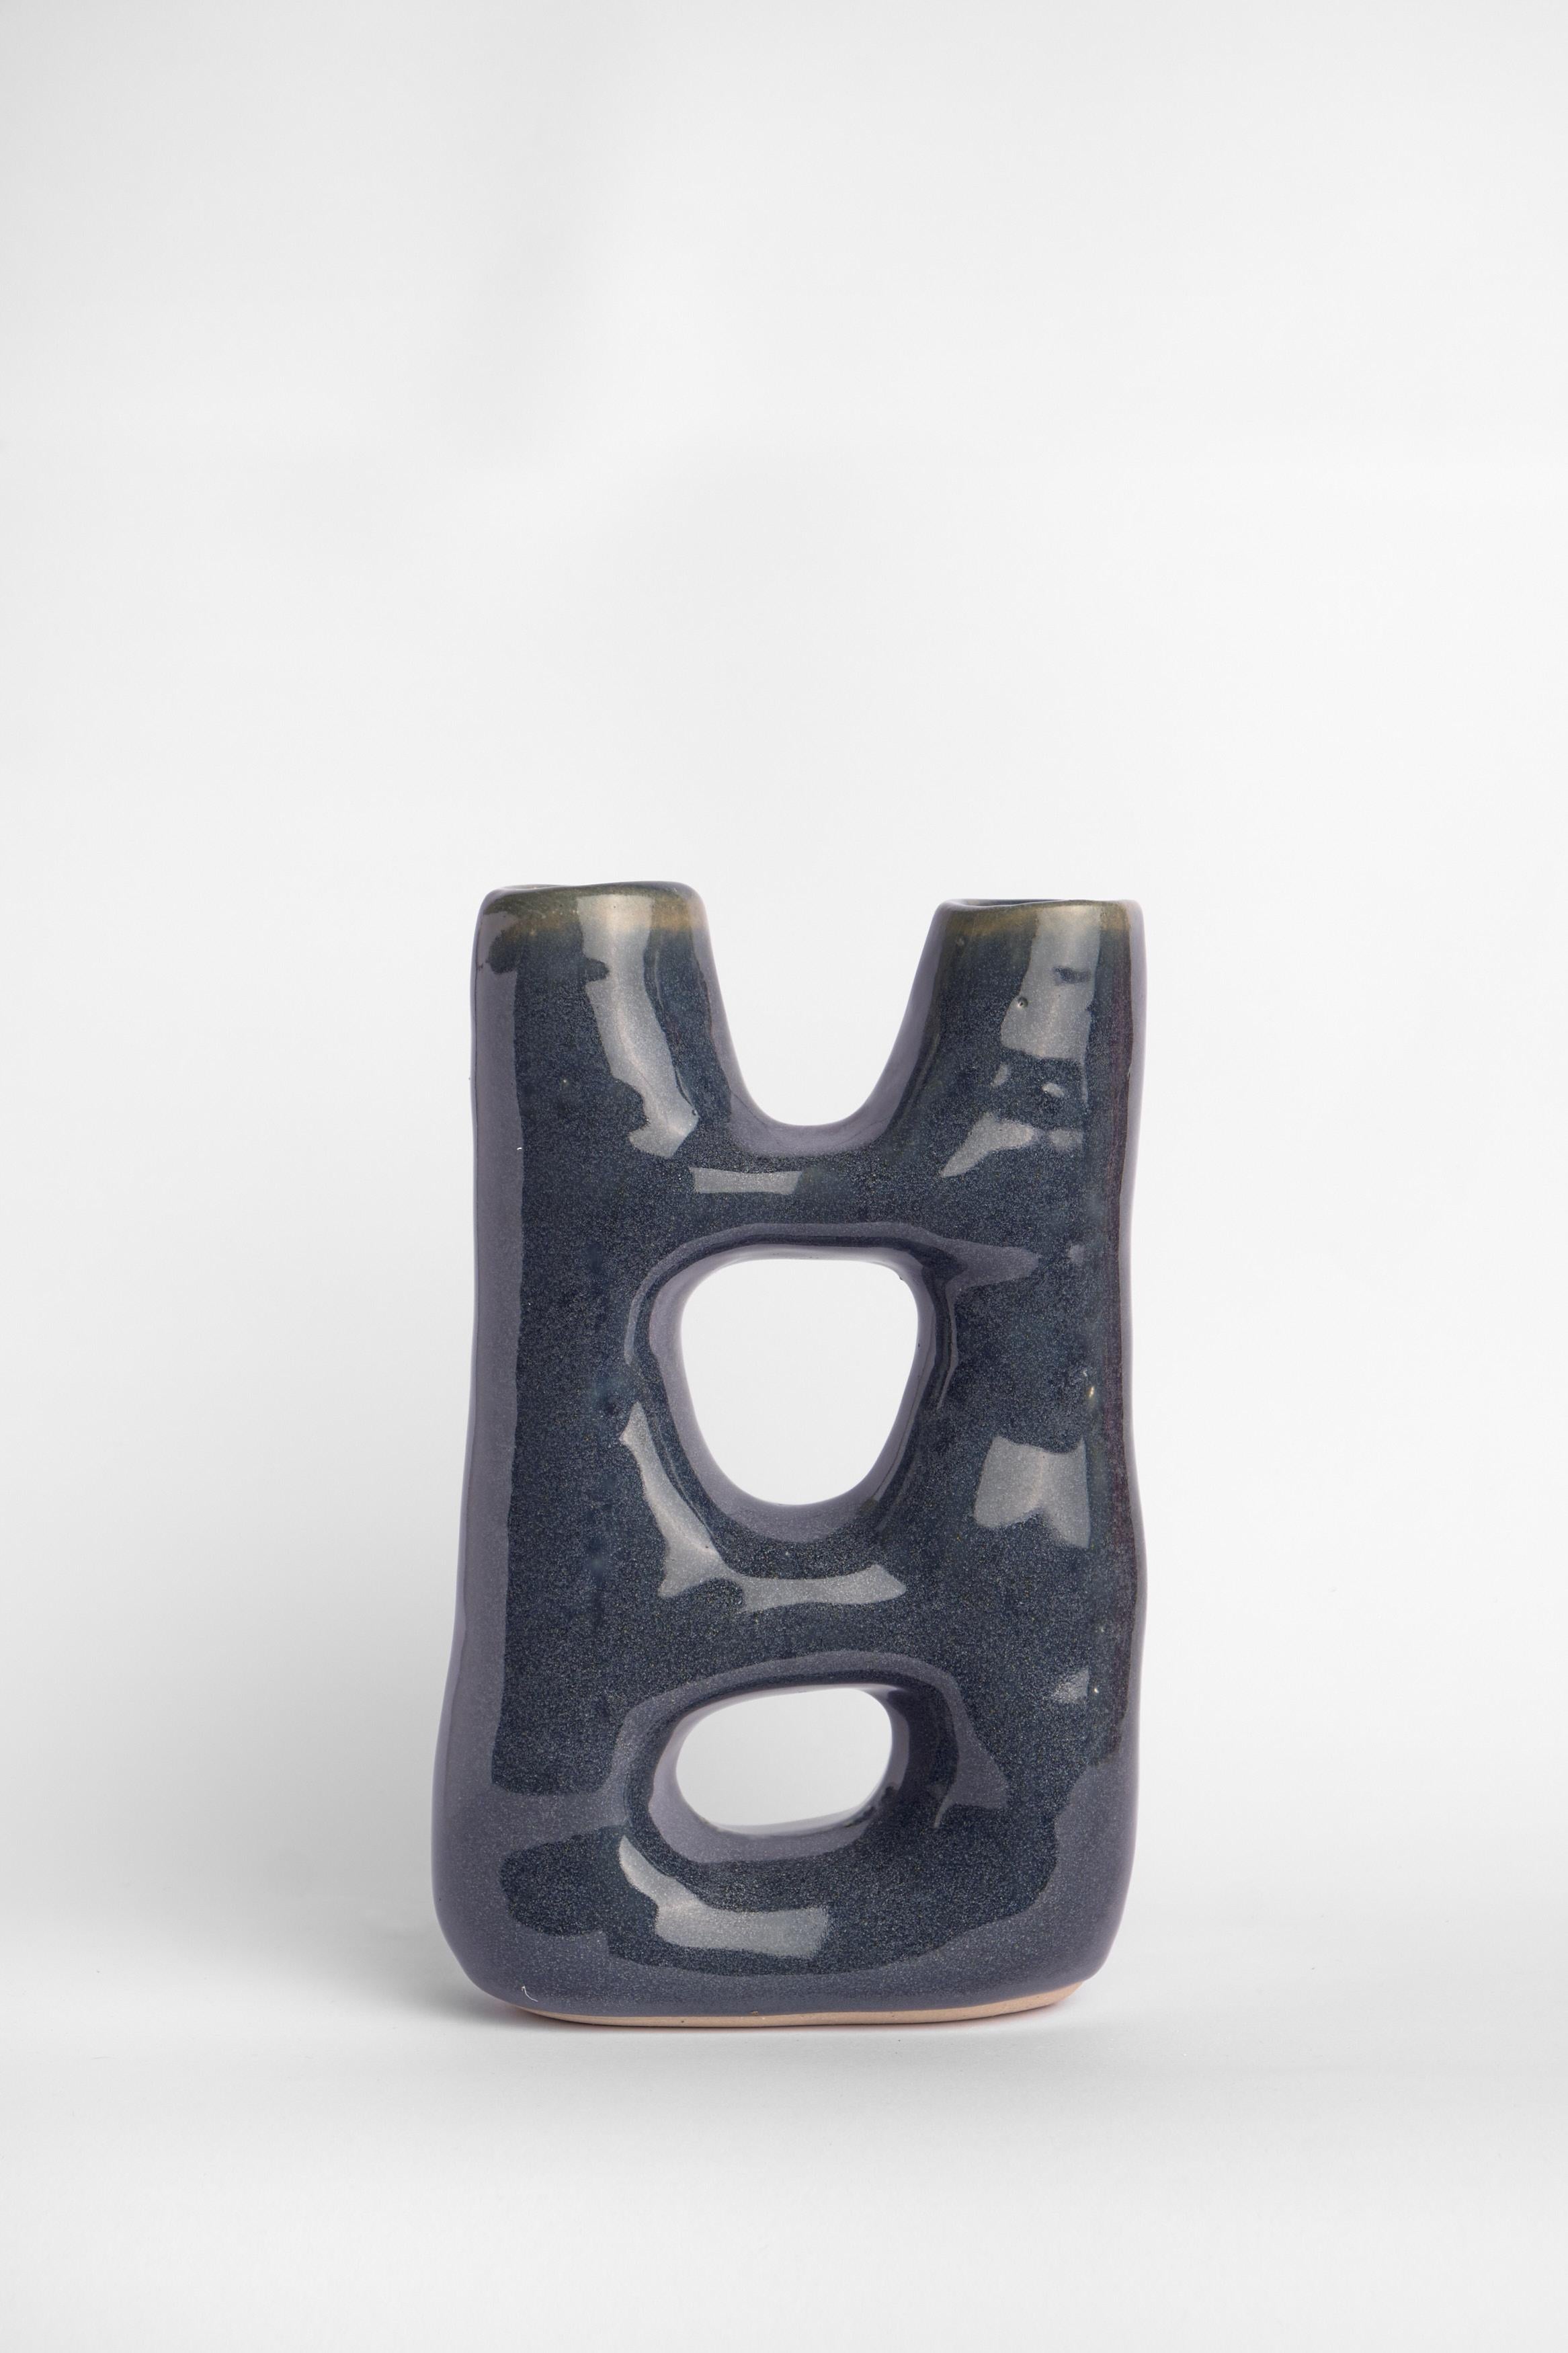 Vase sculptural en céramique de la collection permanente.

Dimensions 17 x 8 x 25